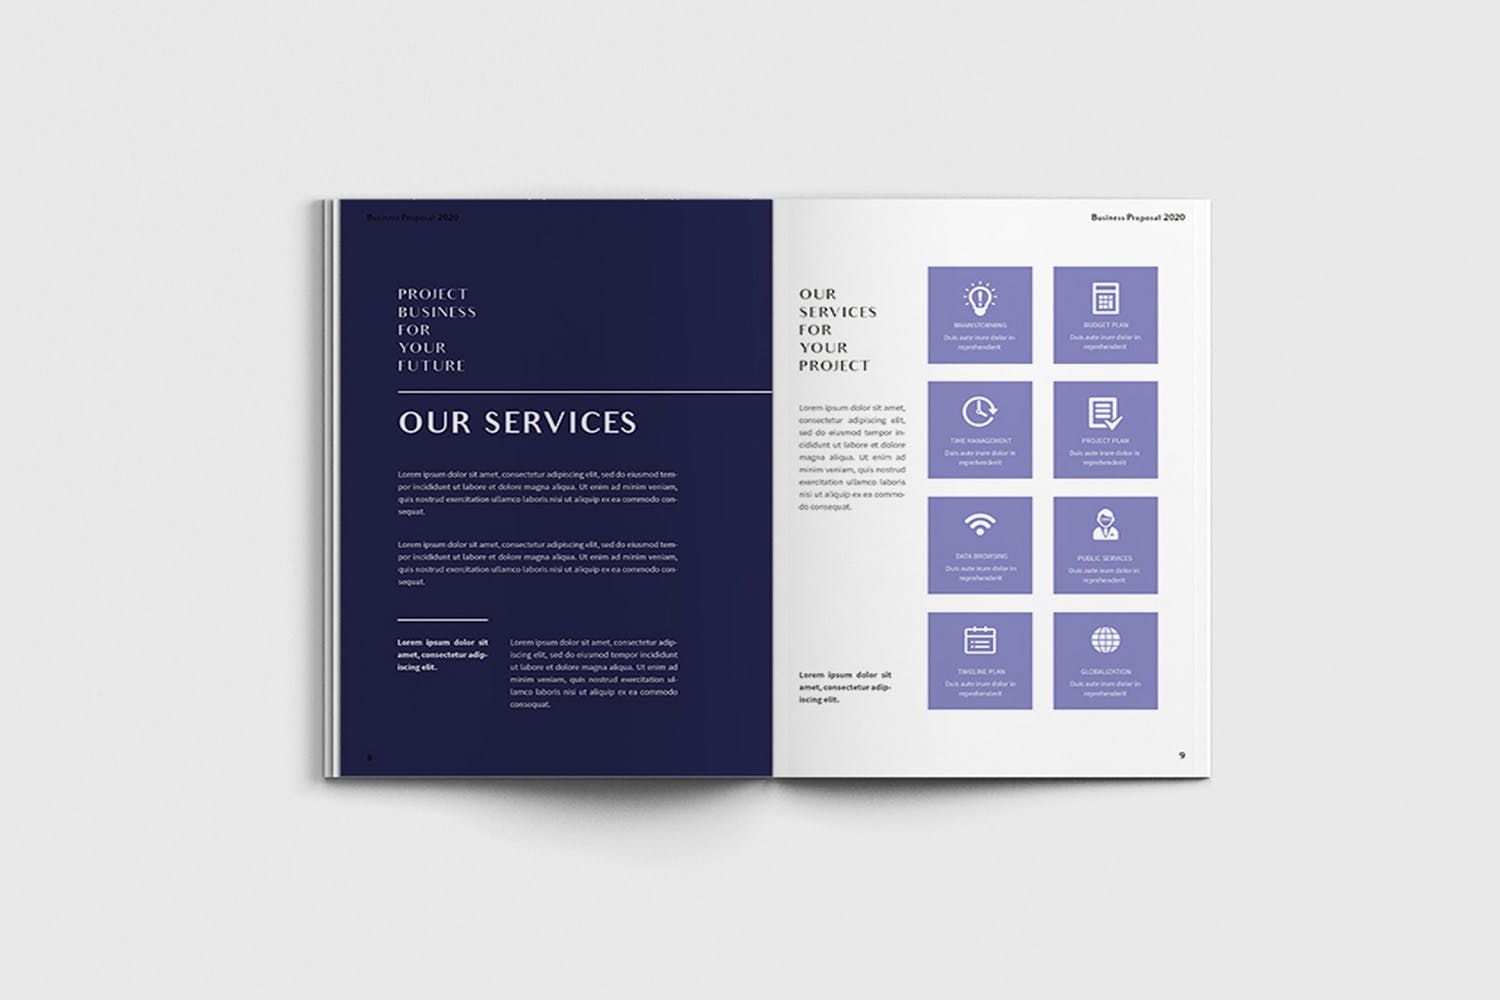 项目规划设计方案/项目解决方案画册设计模板 Exposina – A4 Business Brochure Template插图(4)